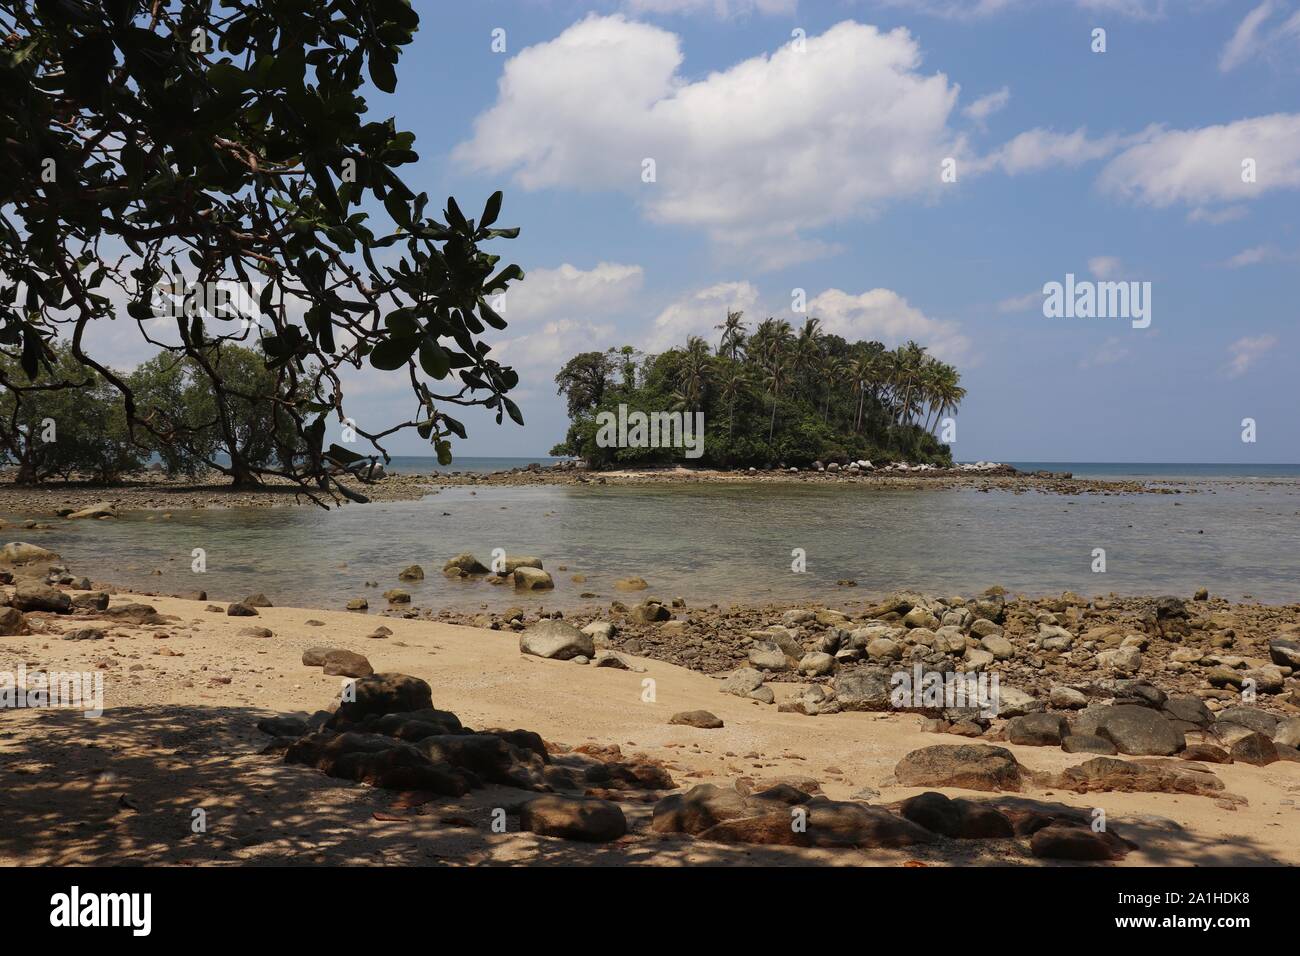 Plage tropicale avec le sable et les pierres, vue sur la mer et l'île verte à travers feuilles, selective focus. Concept de vous détendre dans le paradis nature Banque D'Images